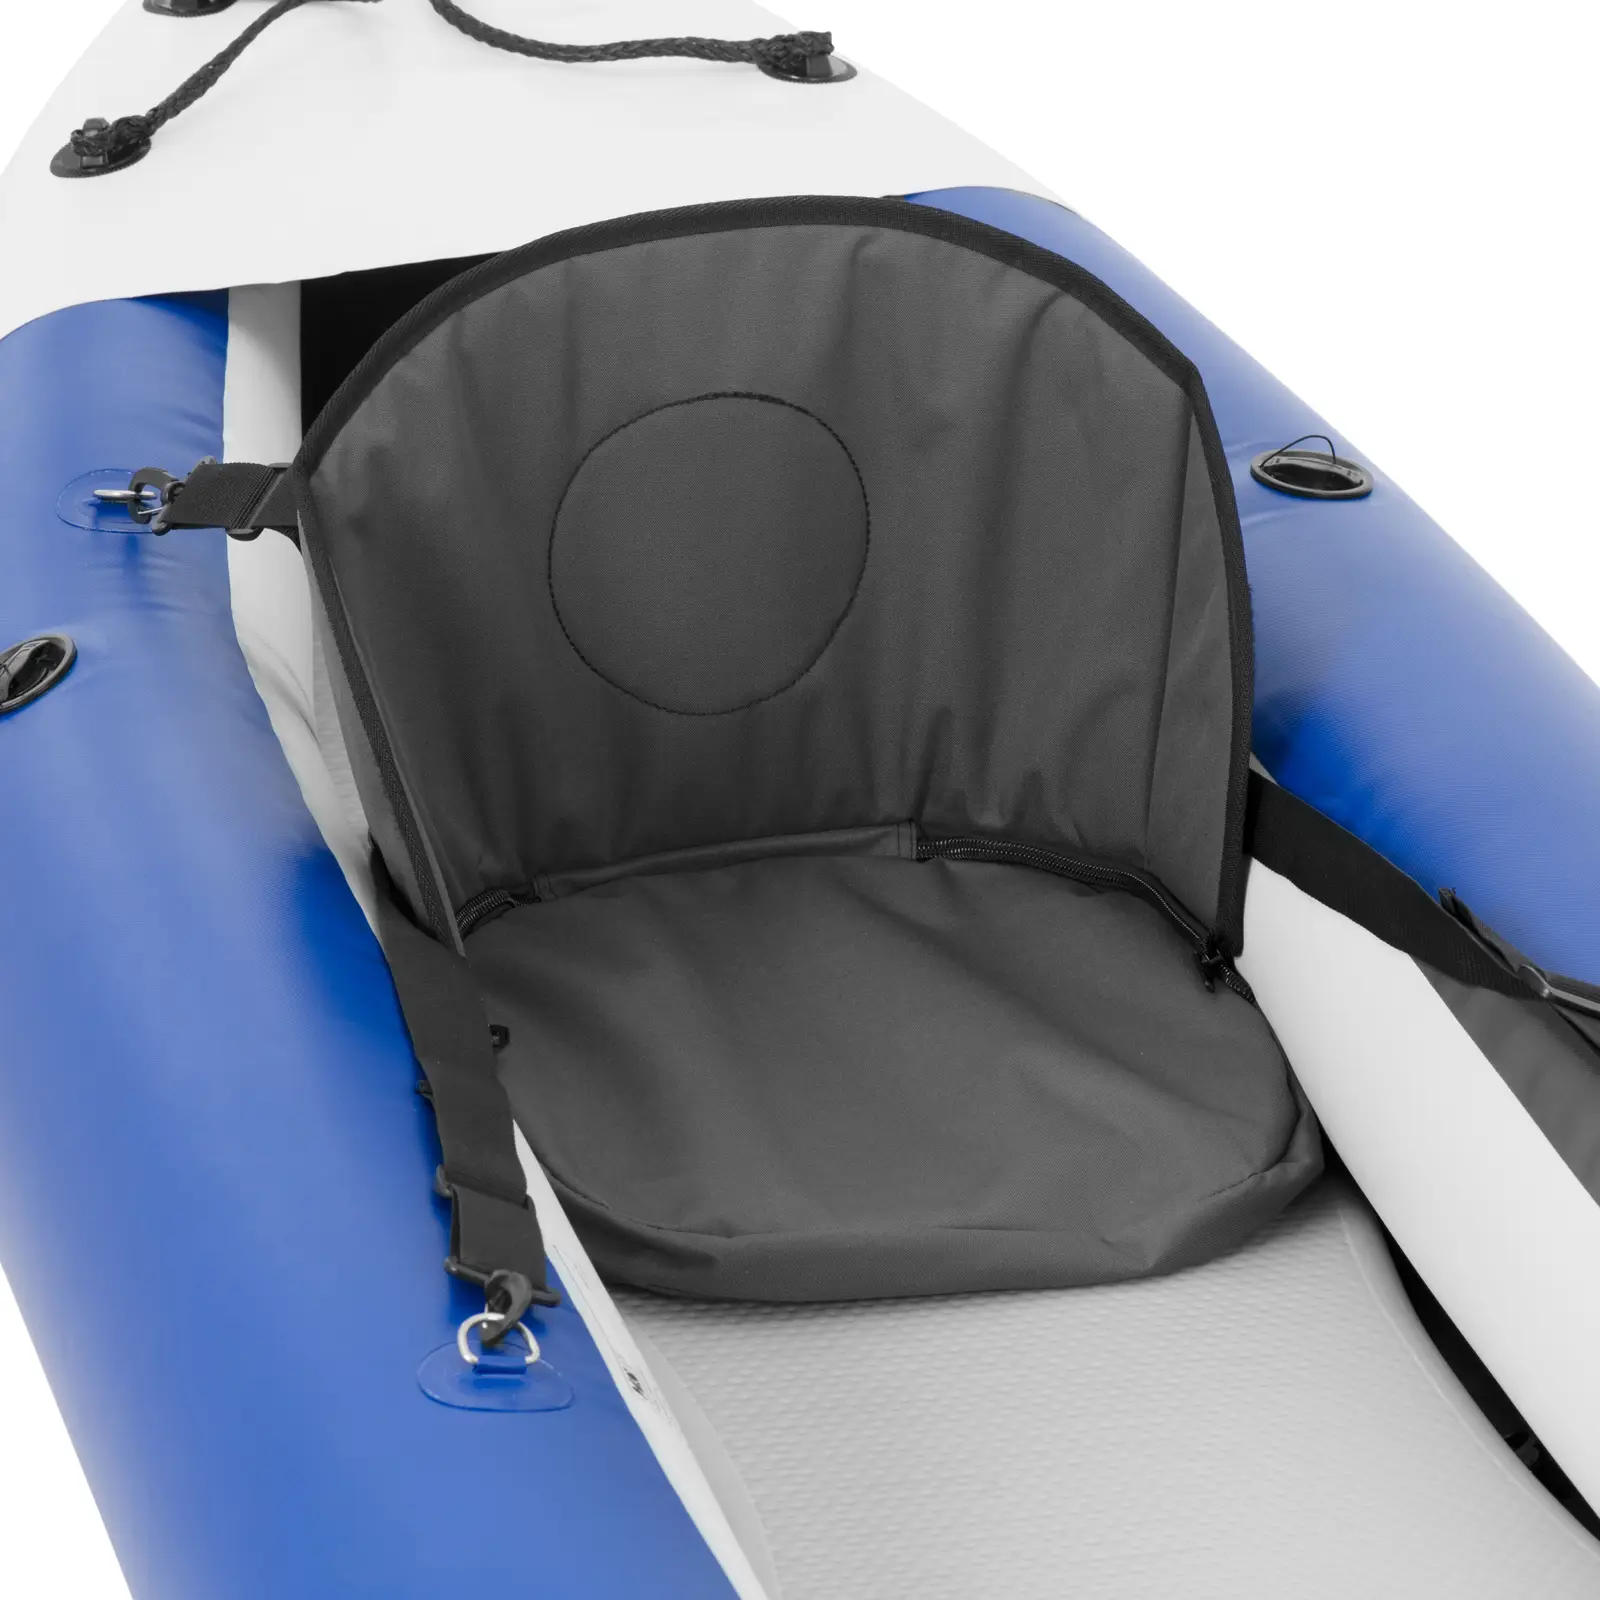 Kayak gonfiabile - Monoposto - Set completo con pagaia, sedile e accessori